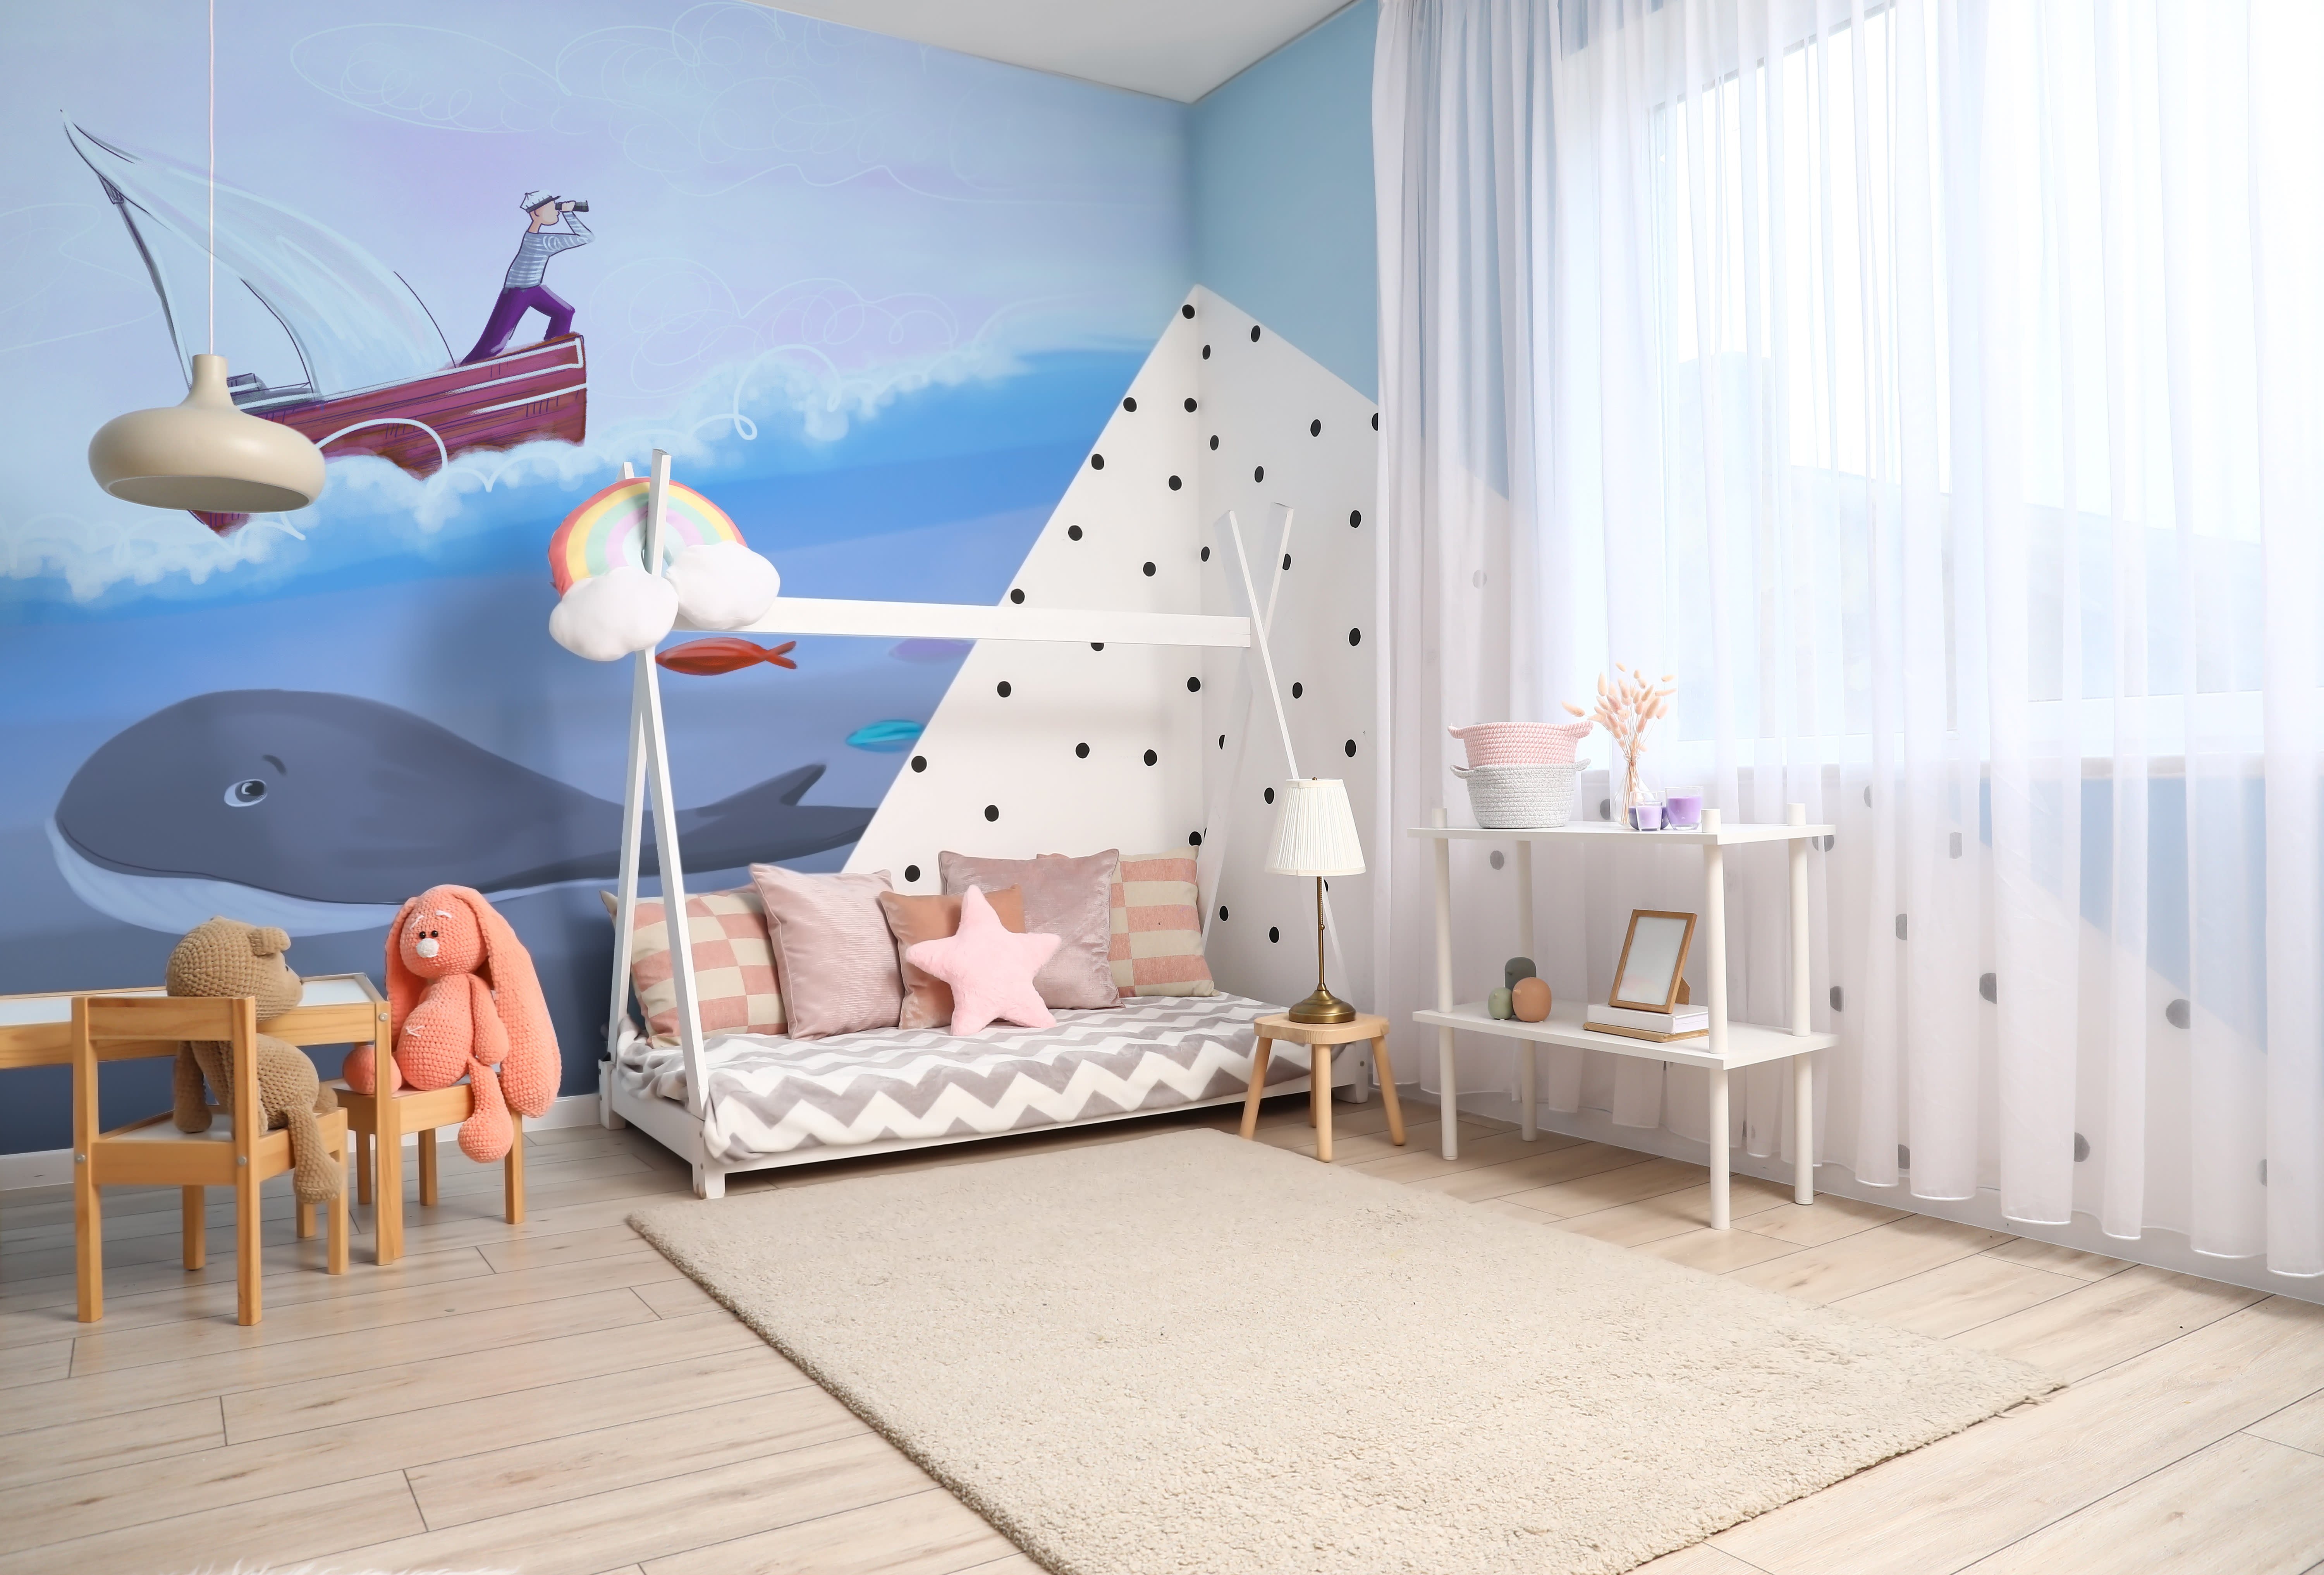 Décoration chambre enfant - décoration murale personnalisée - Un grand  marché